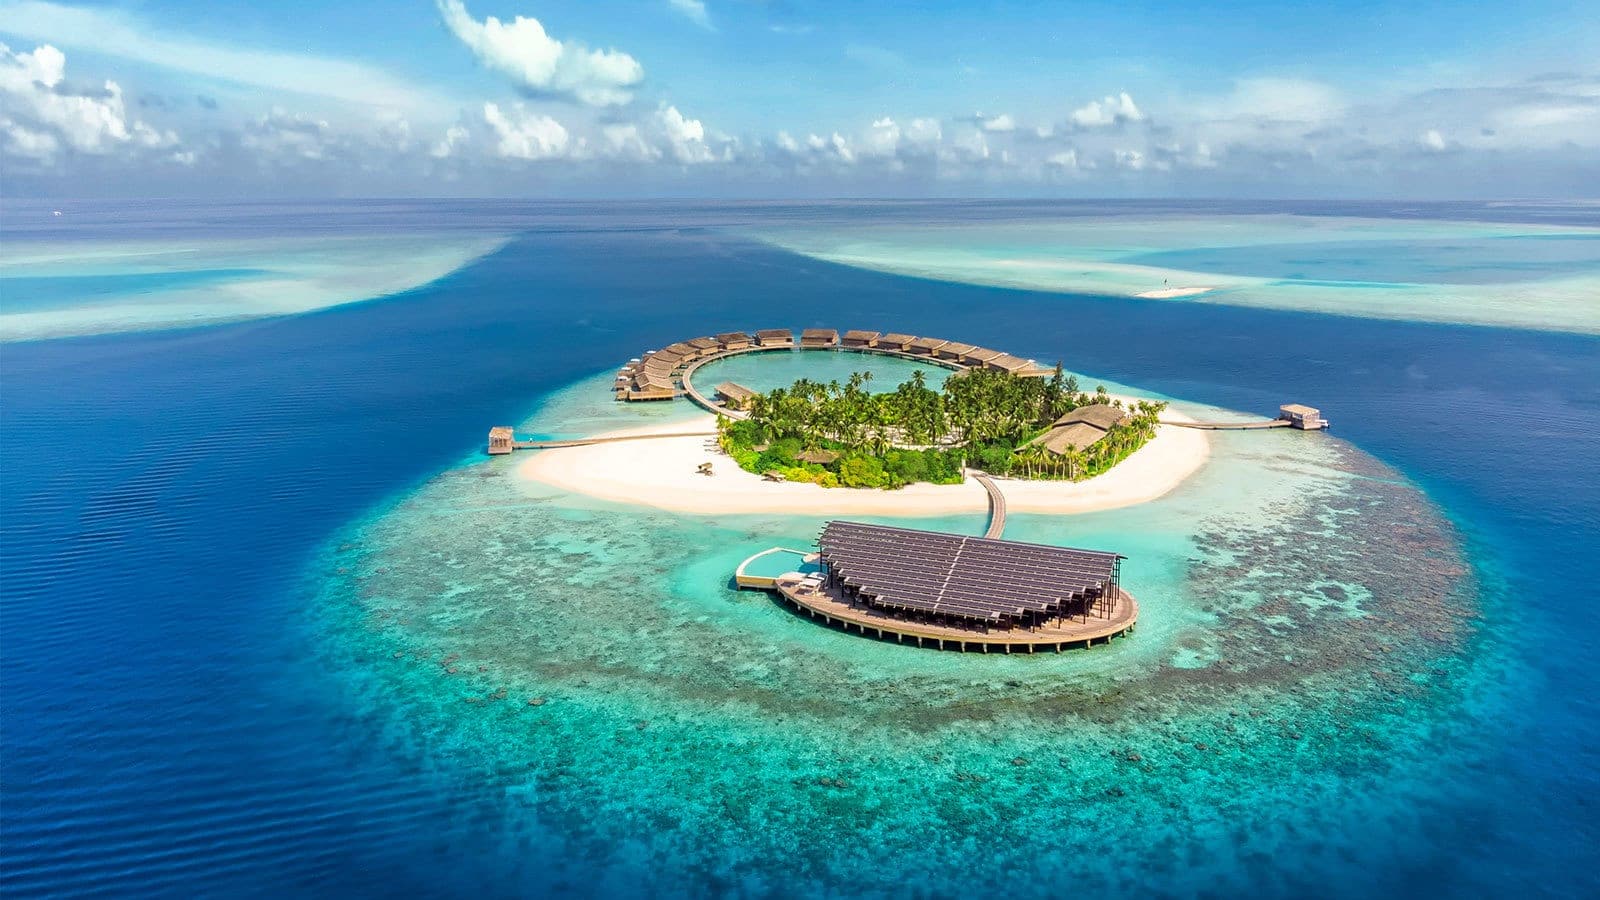 جزر المالديف في المحيط الهندي من أجمل الأماكن في العالم 2022 لقضاء شهر العسل